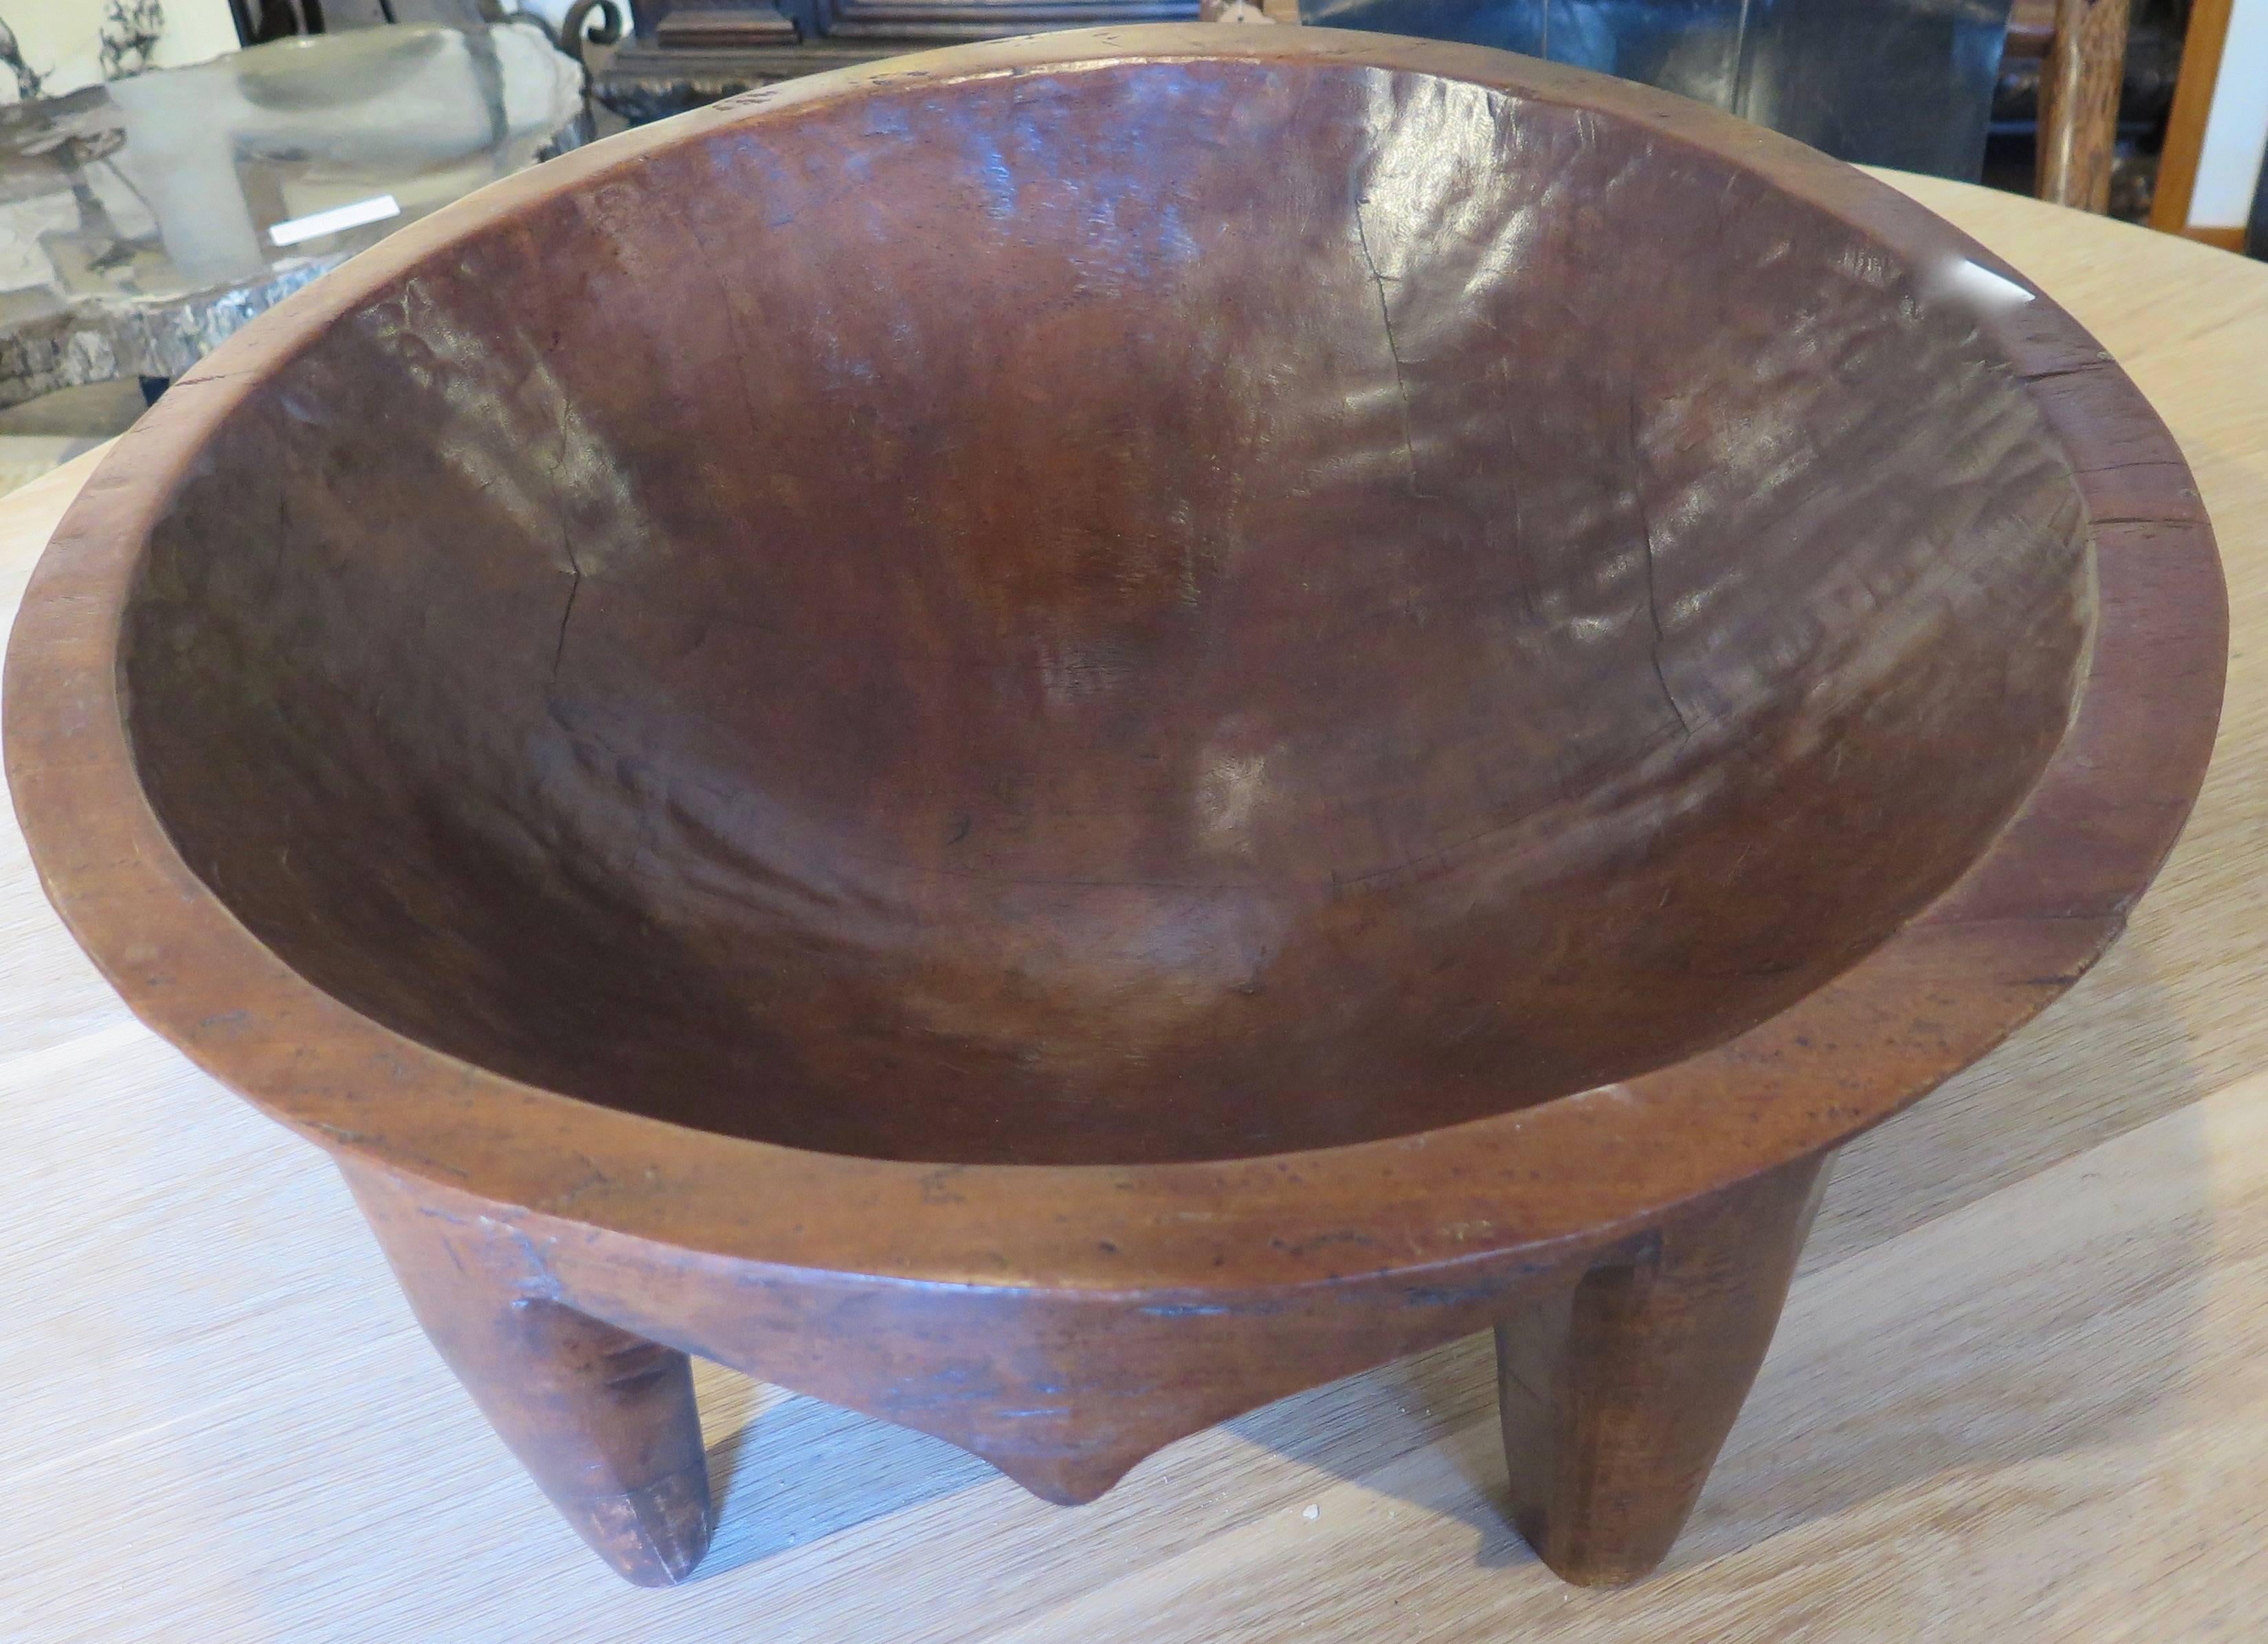 fijian kava bowls for sale